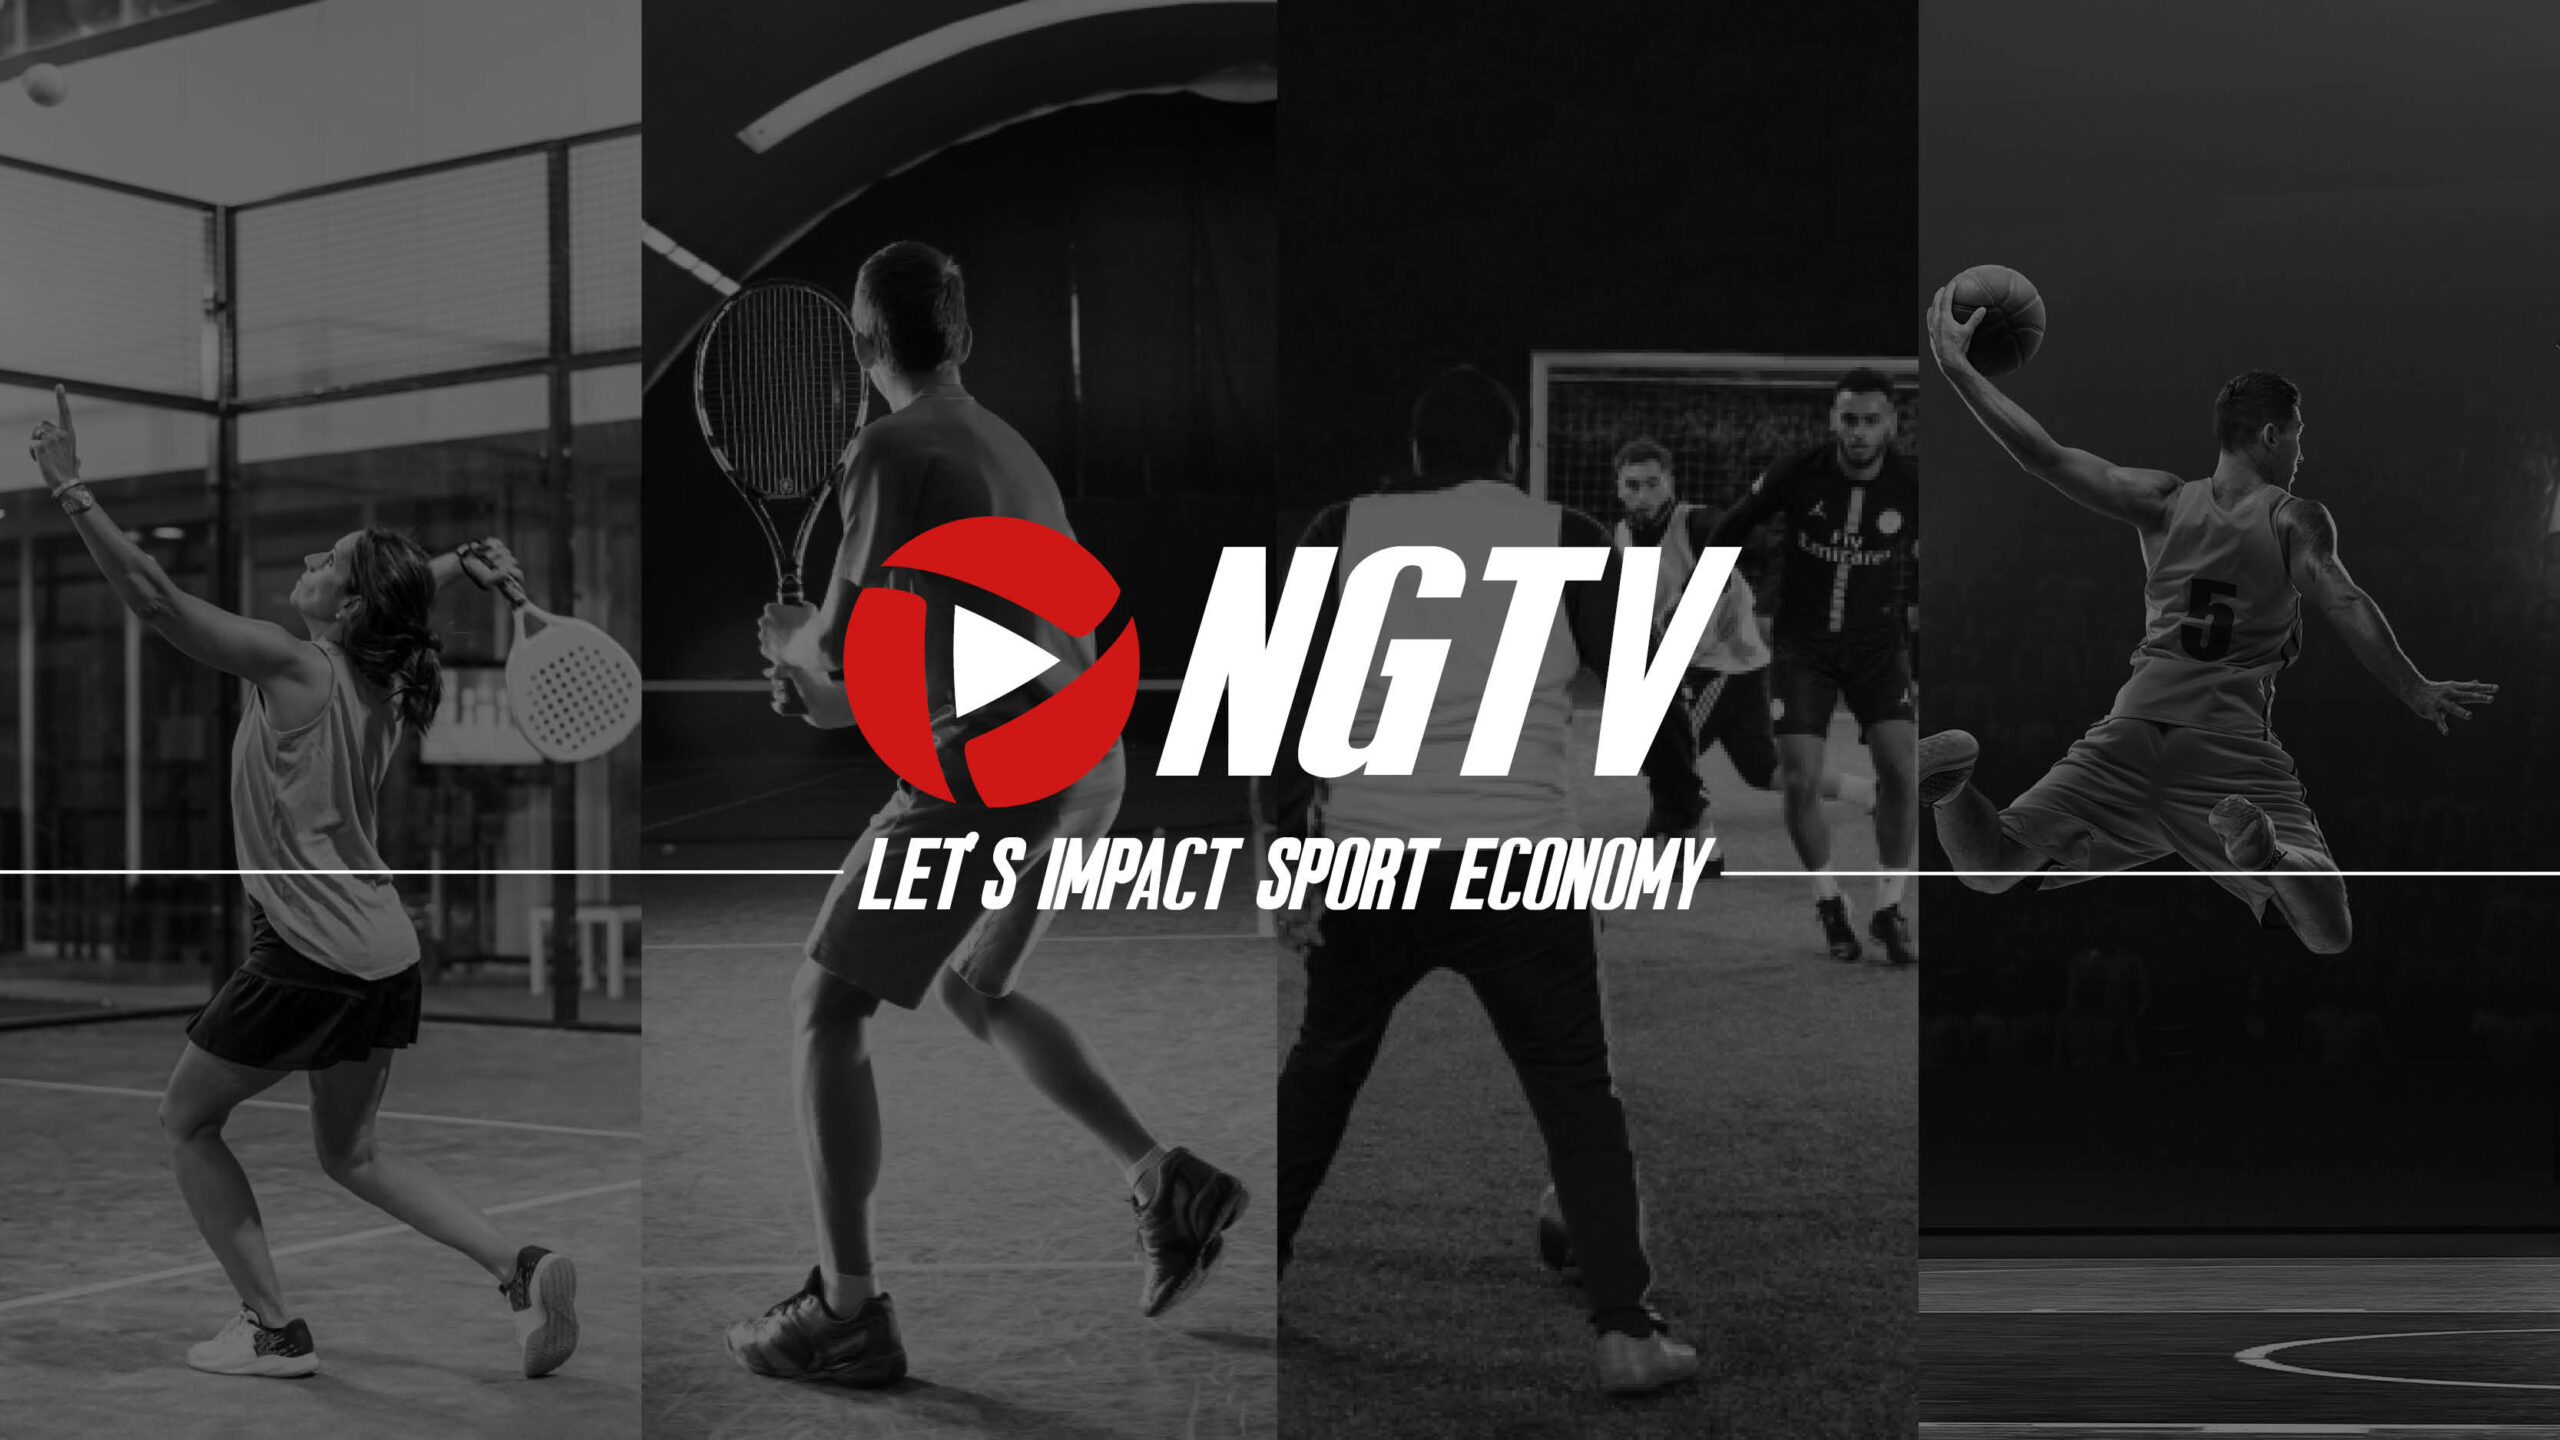 L’objectif de NGTV : impacter l’économie du sport !